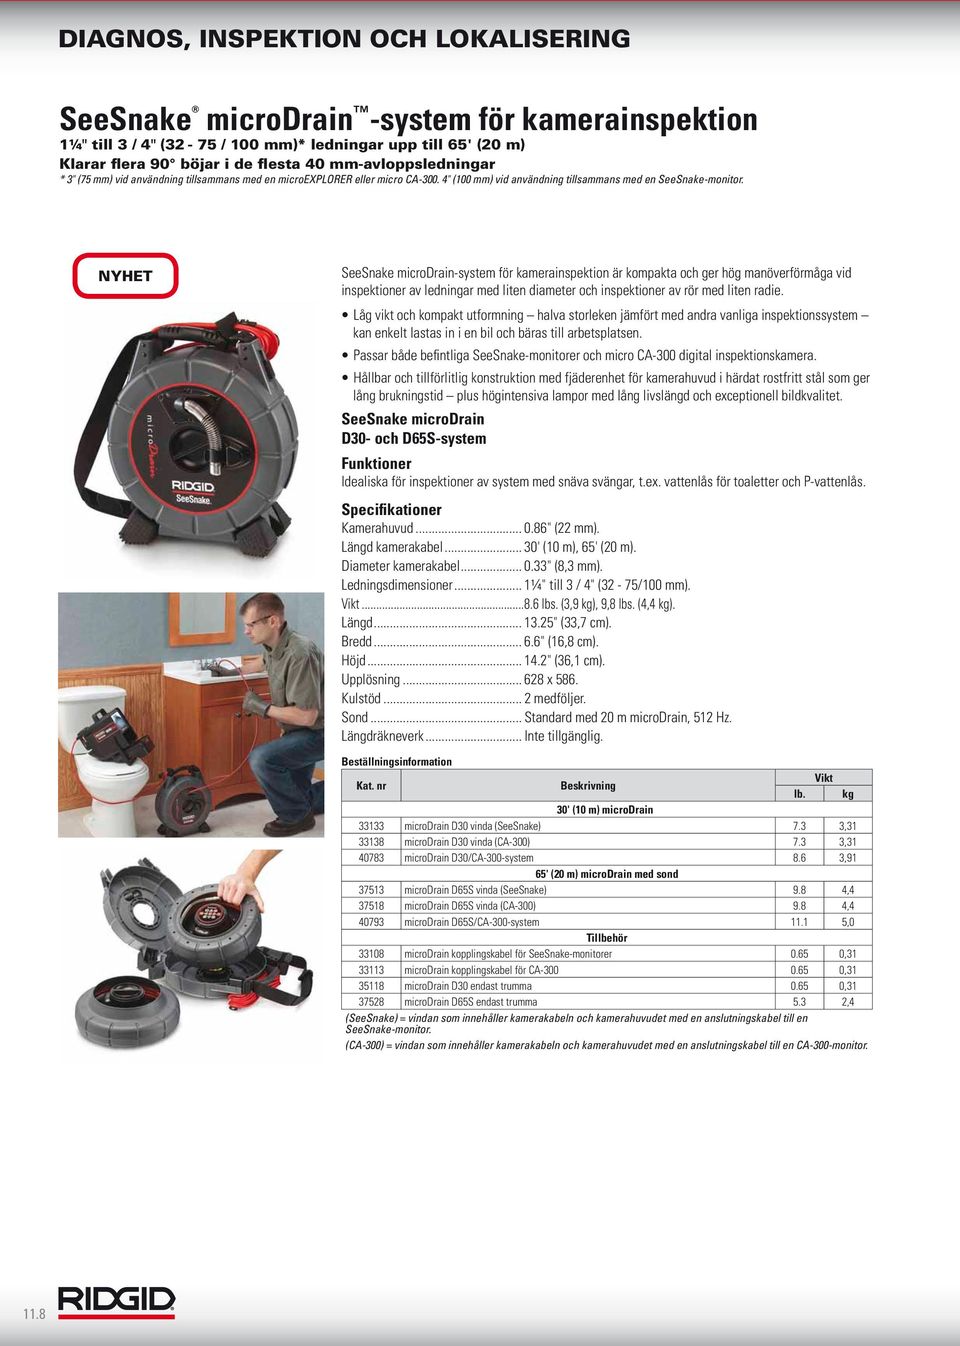 NYHET SeeSnake microdrain-system för kamerainspektion är kompakta och ger hög manöverförmåga vid inspektioner av ledningar med liten diameter och inspektioner av rör med liten radie.